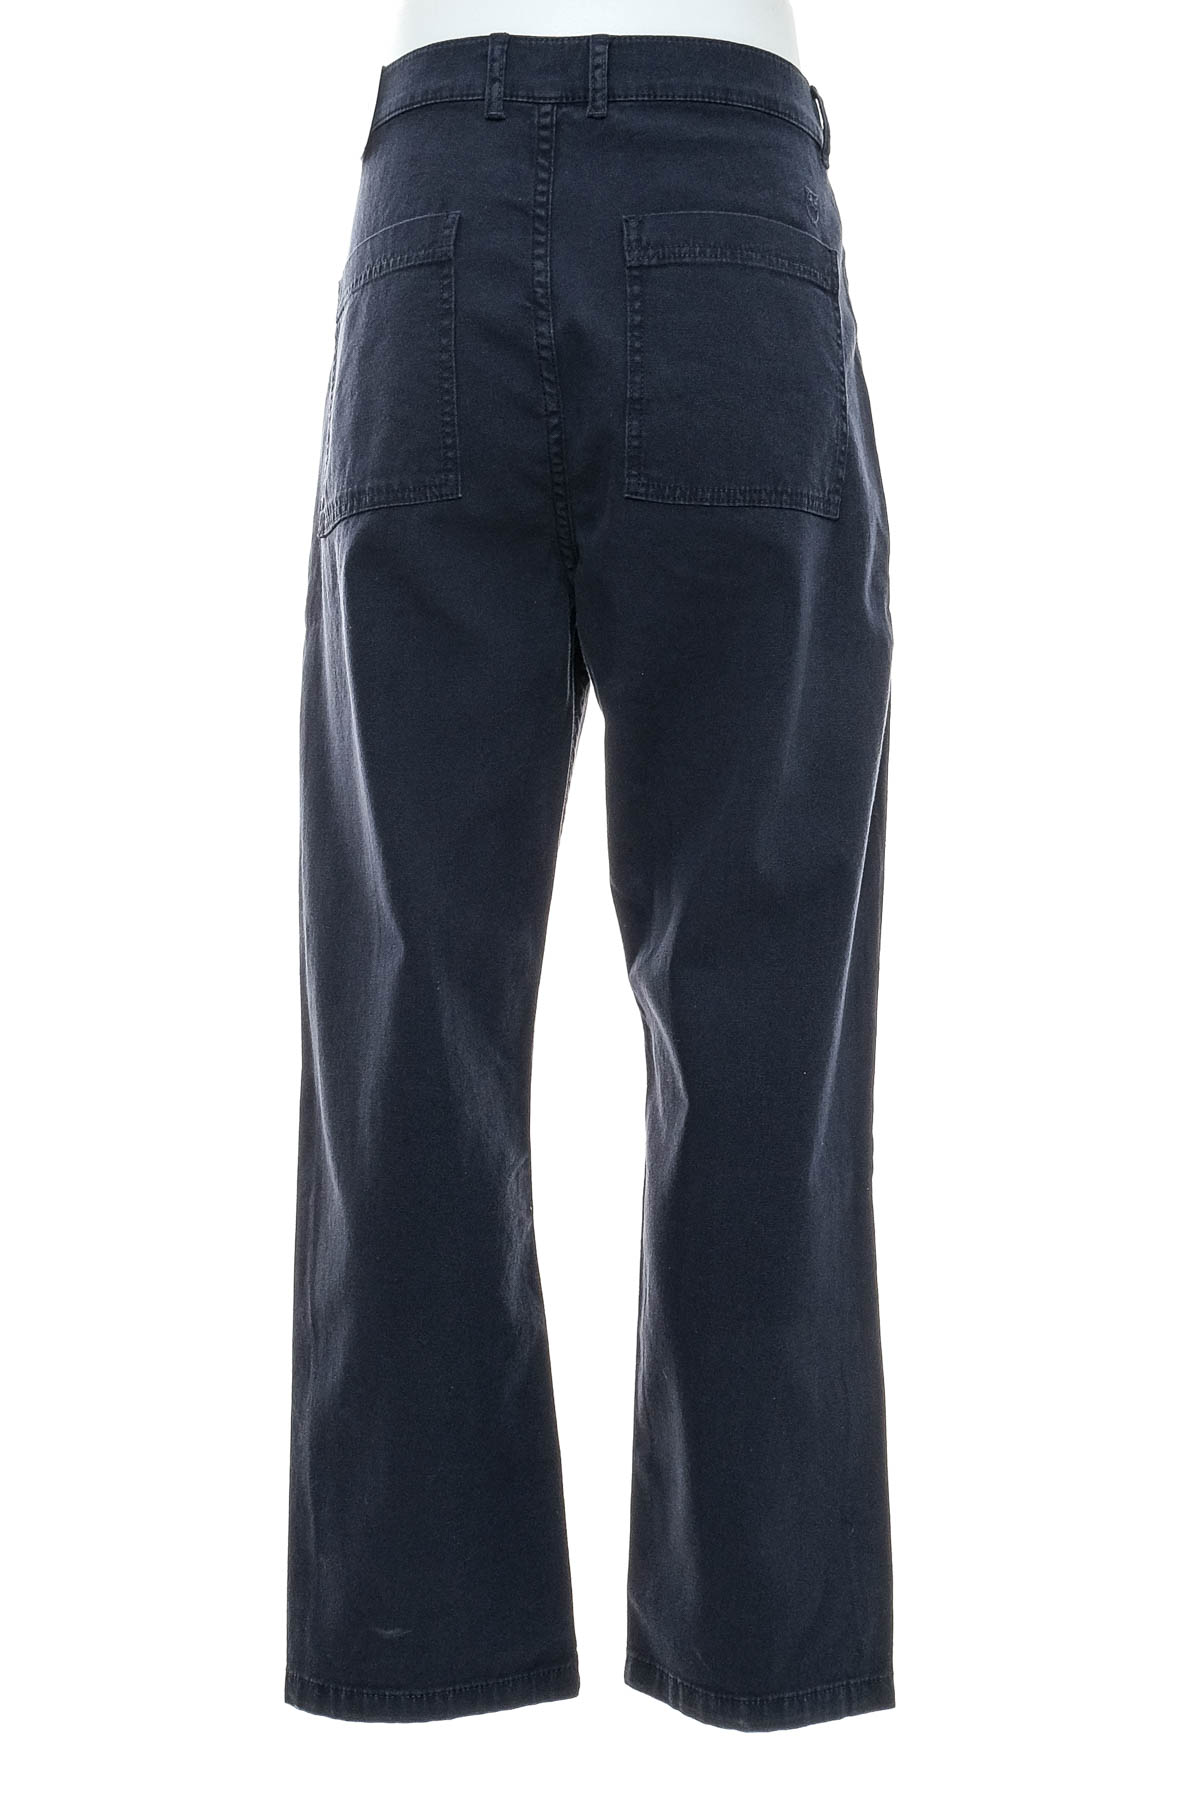 Men's trousers - KnowledgeCotton Apparel - 1